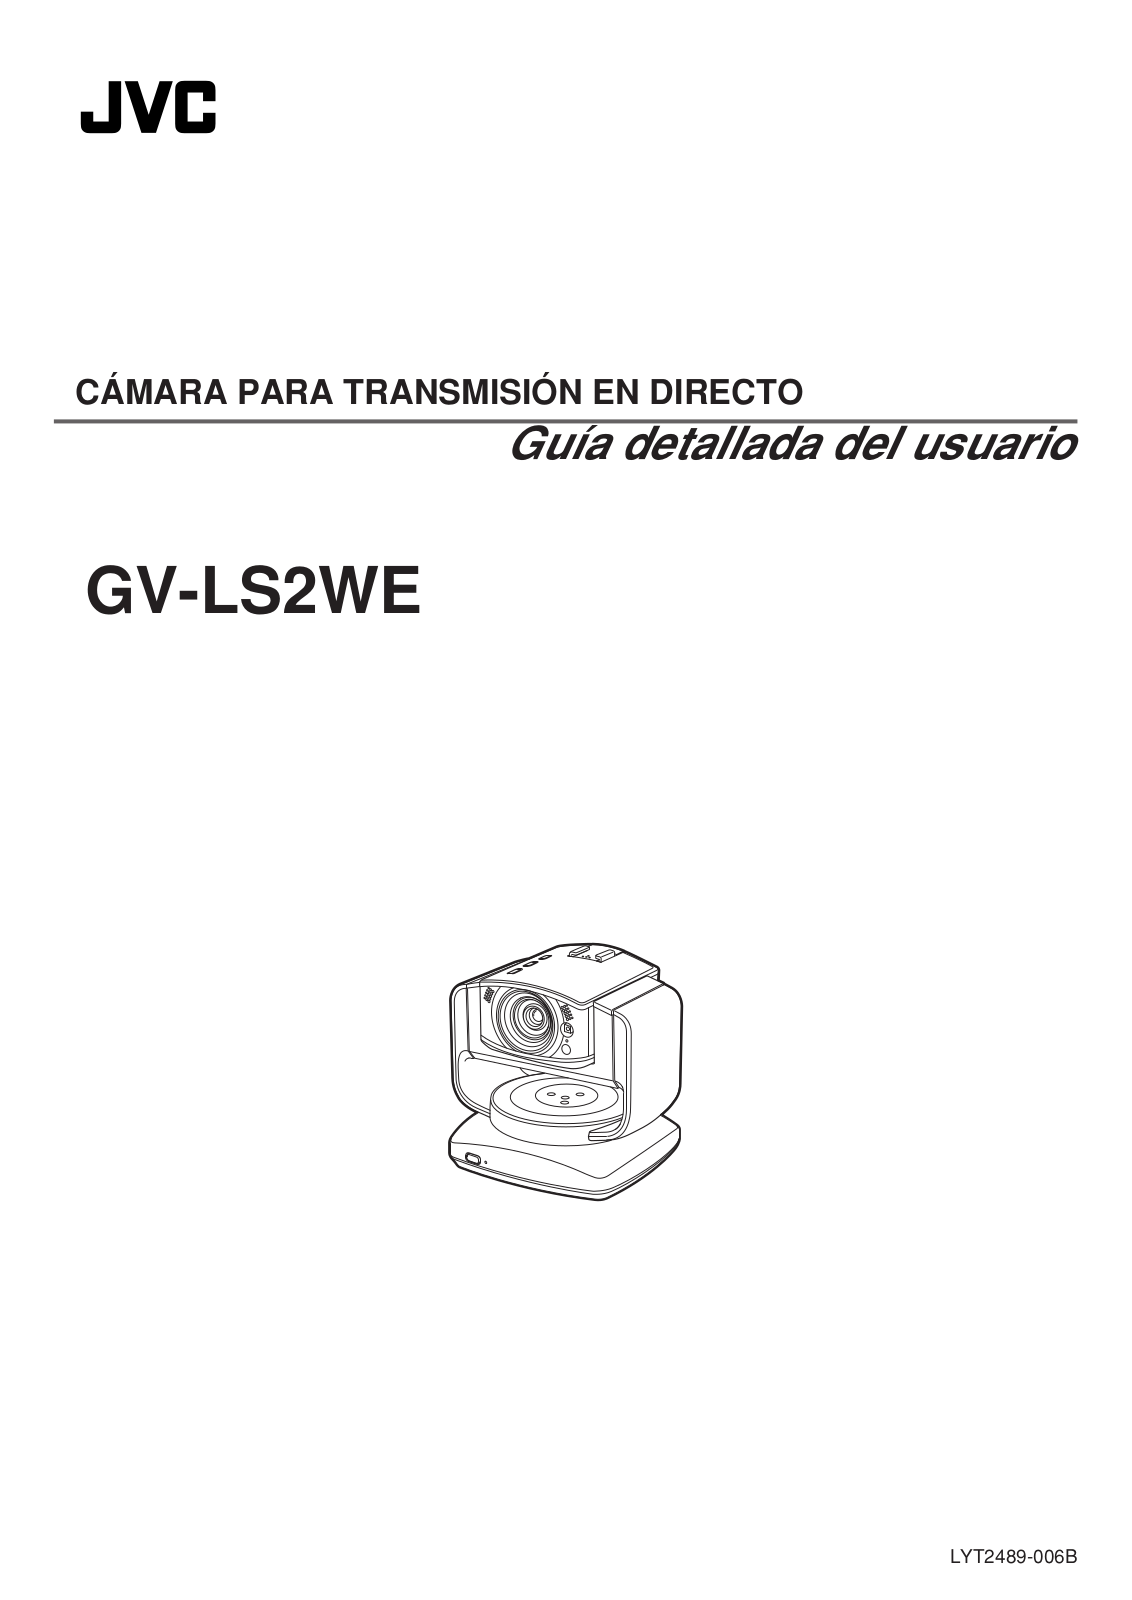 JVC GV-LS2WE Guía Detallada del Usuario